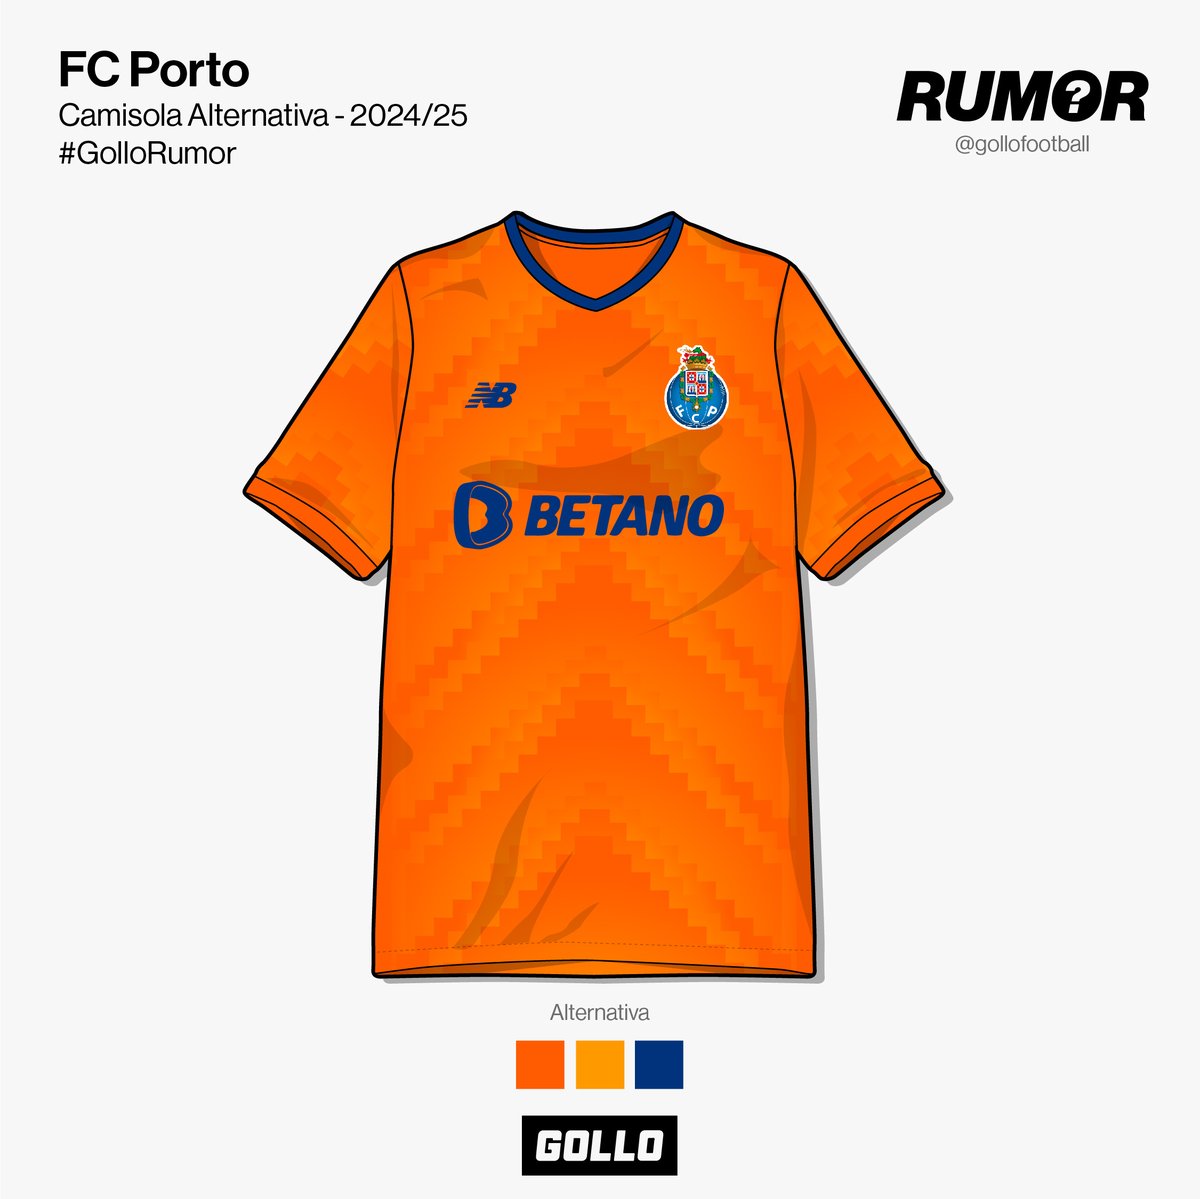 Saíram cá para fora algumas informações sobre o novo equipamento alternativo do FC Porto. 🔵🟠 A camisola traz o laranja de volta aos equipamentos alternativos. A cor é aplicada num grafismo que nos faz lembrar os equipamentos dos anos 80 e 90. O que achas do novo equipamento…